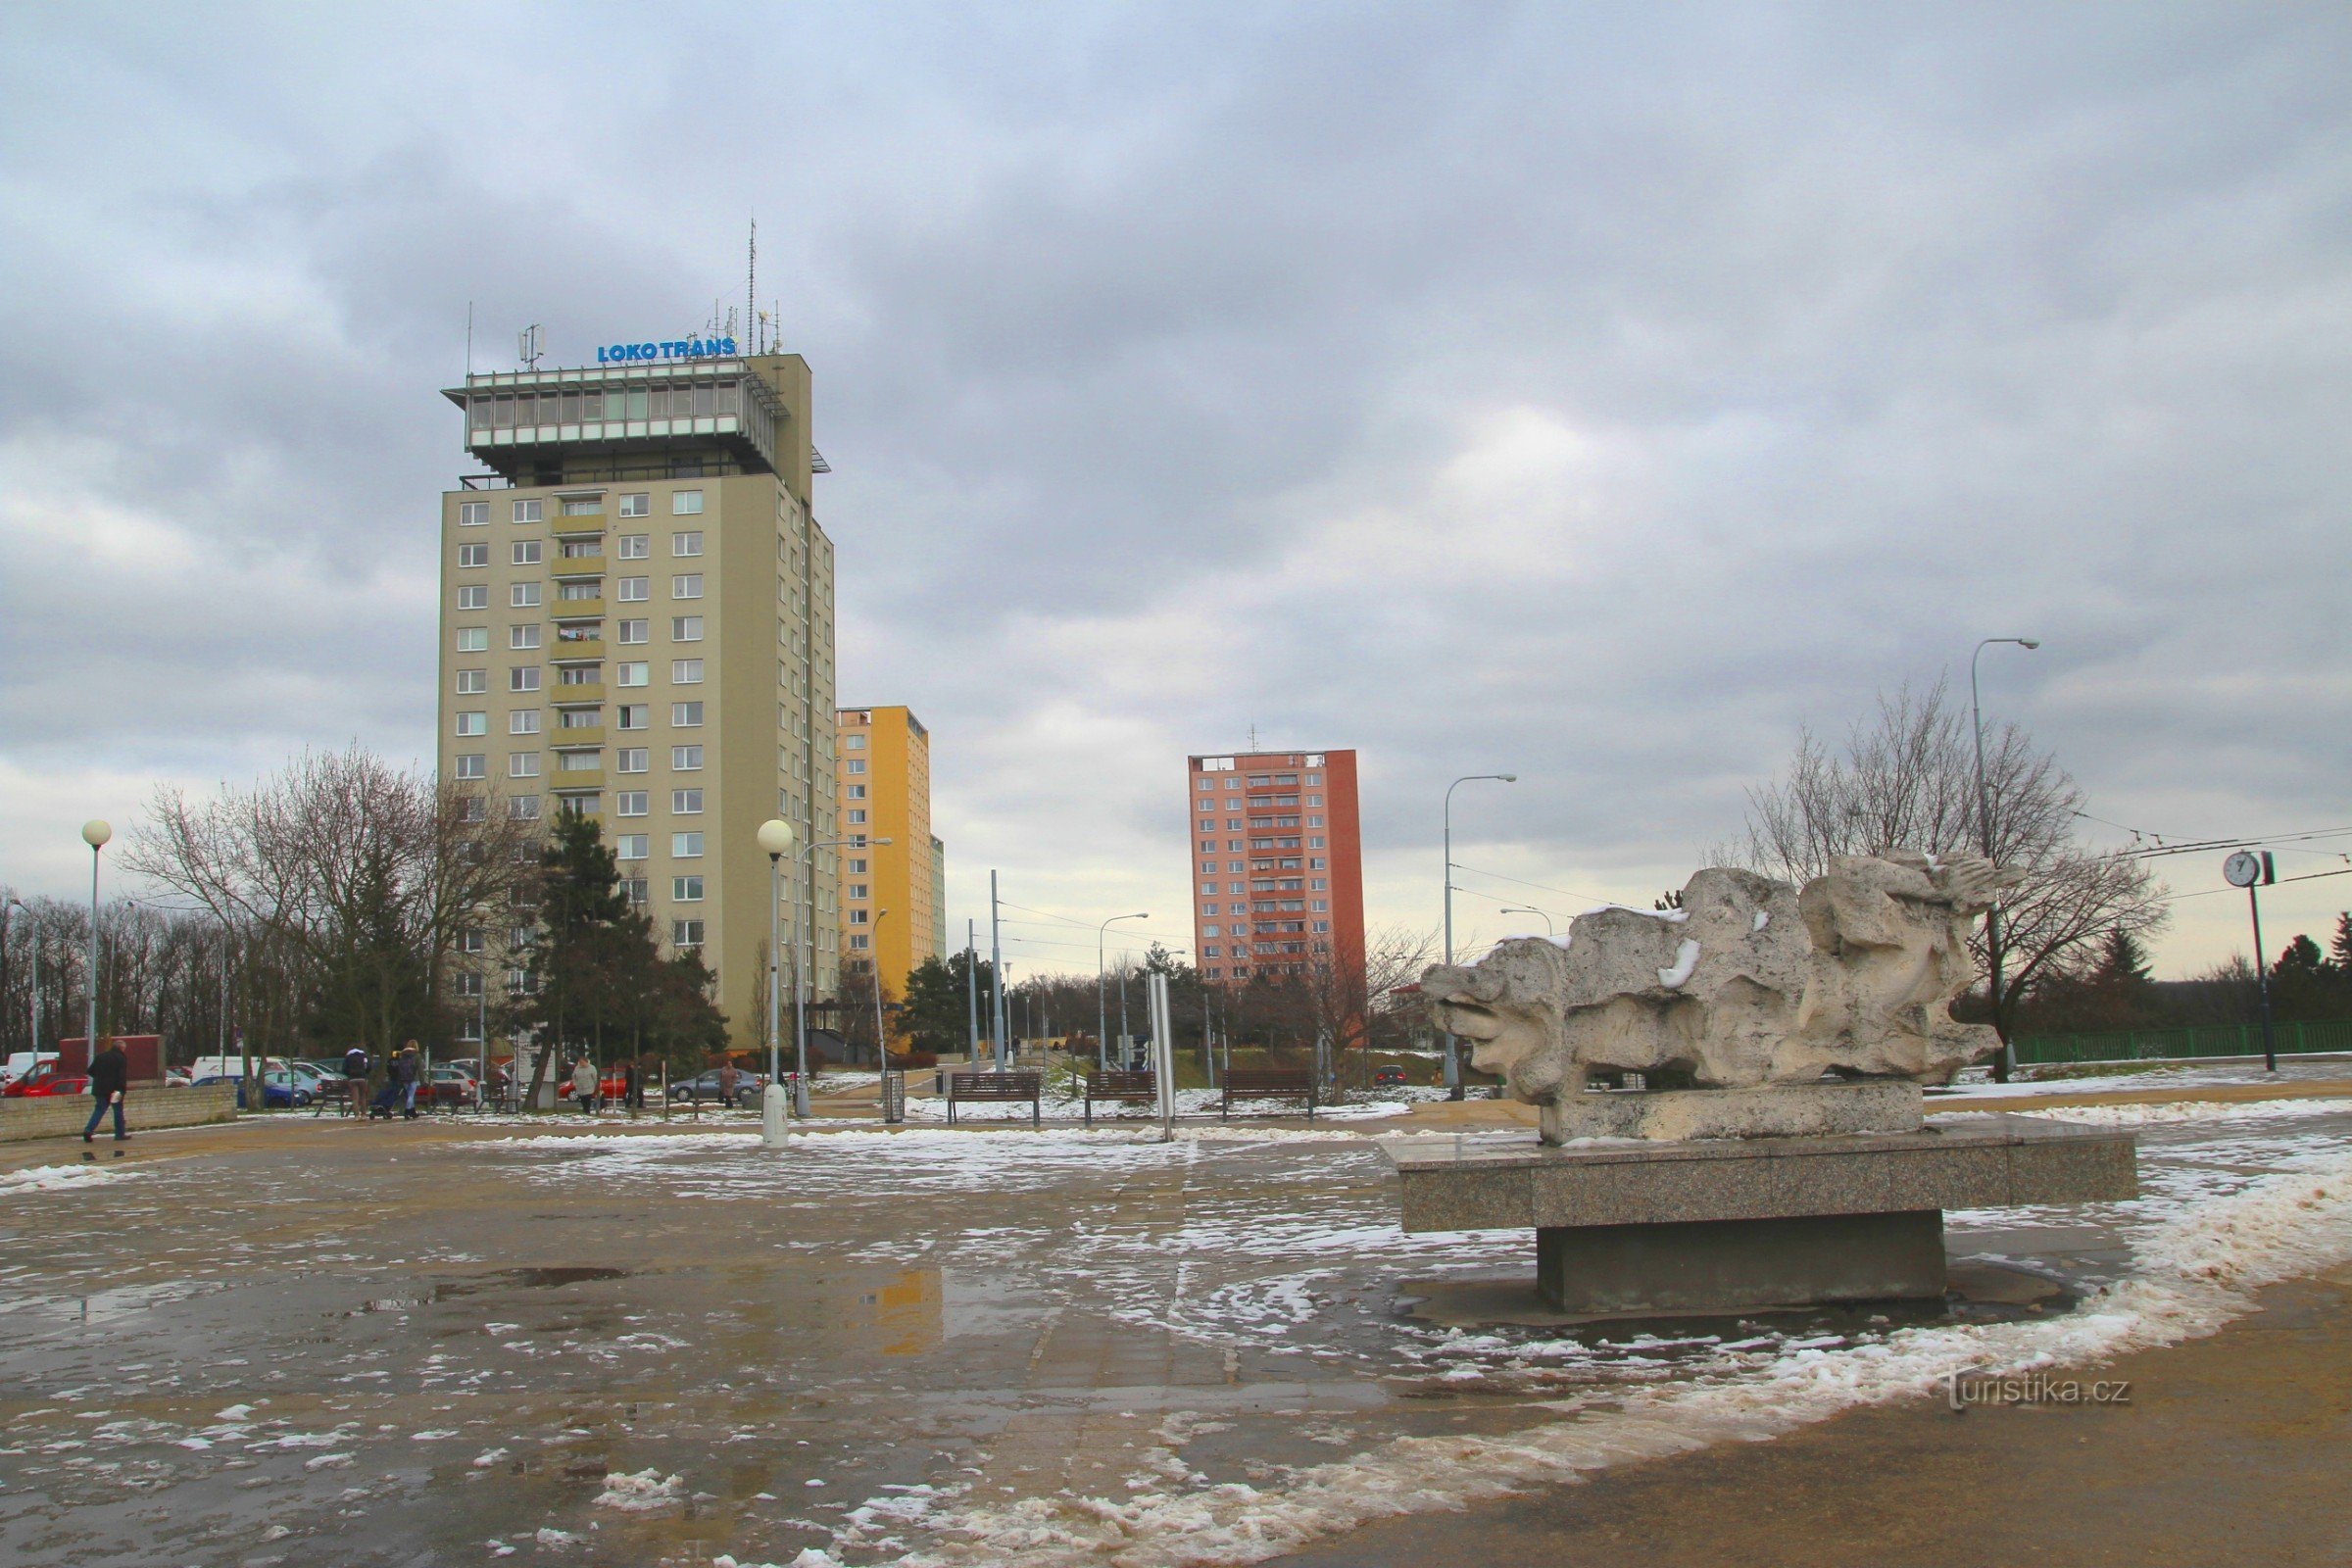 コホウトヴィツェのメイン広場 - ヴォジーシュコヴァの始まり